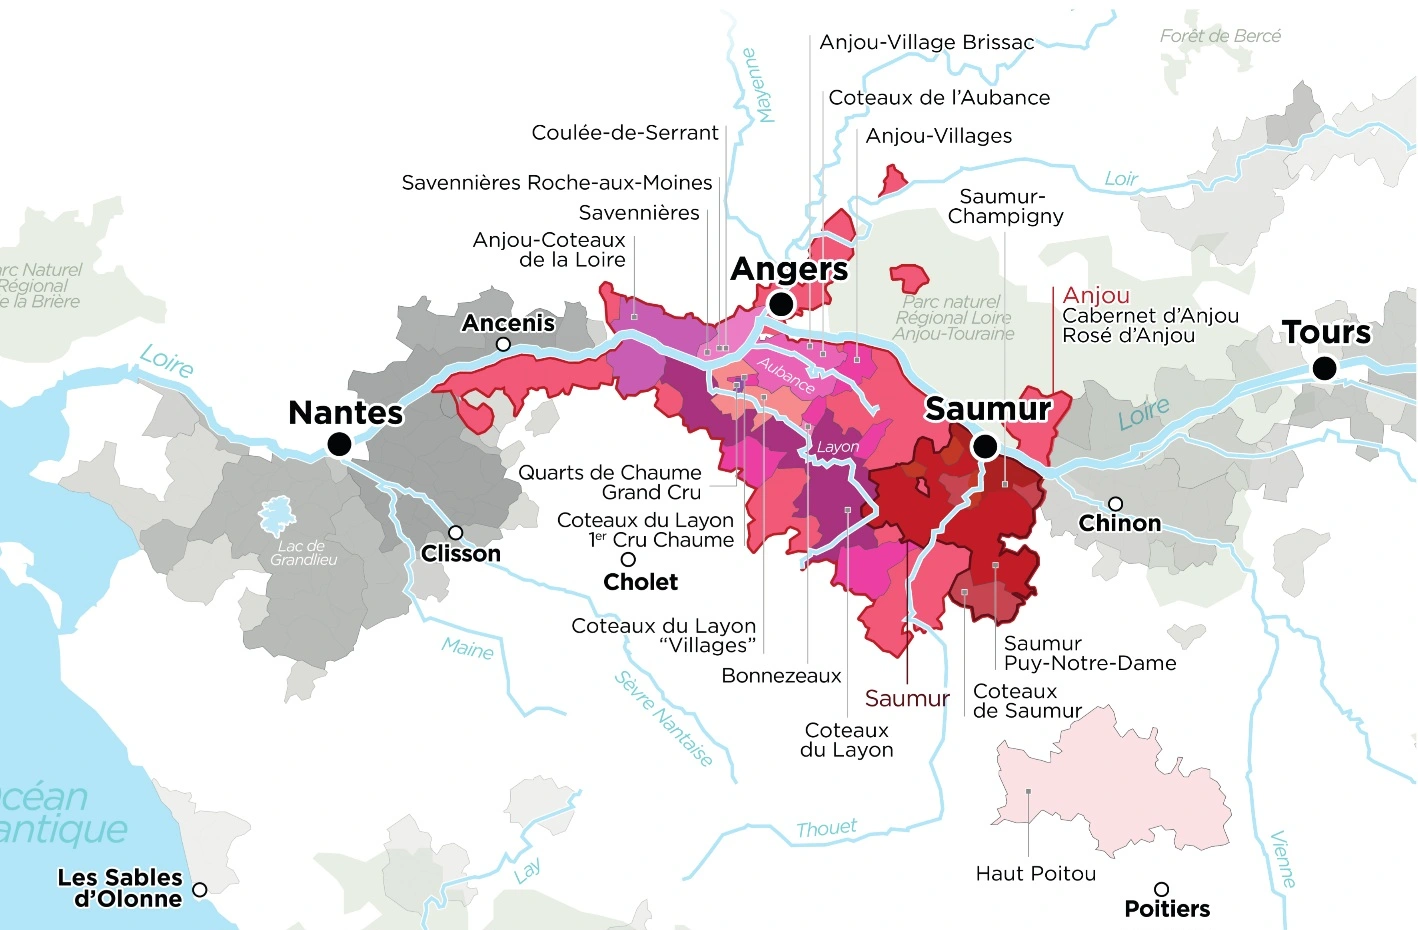 프랑스 루아르(Loire) 앙주-소뮈르(Anjou-Saumur) 지역의 AOC 지도